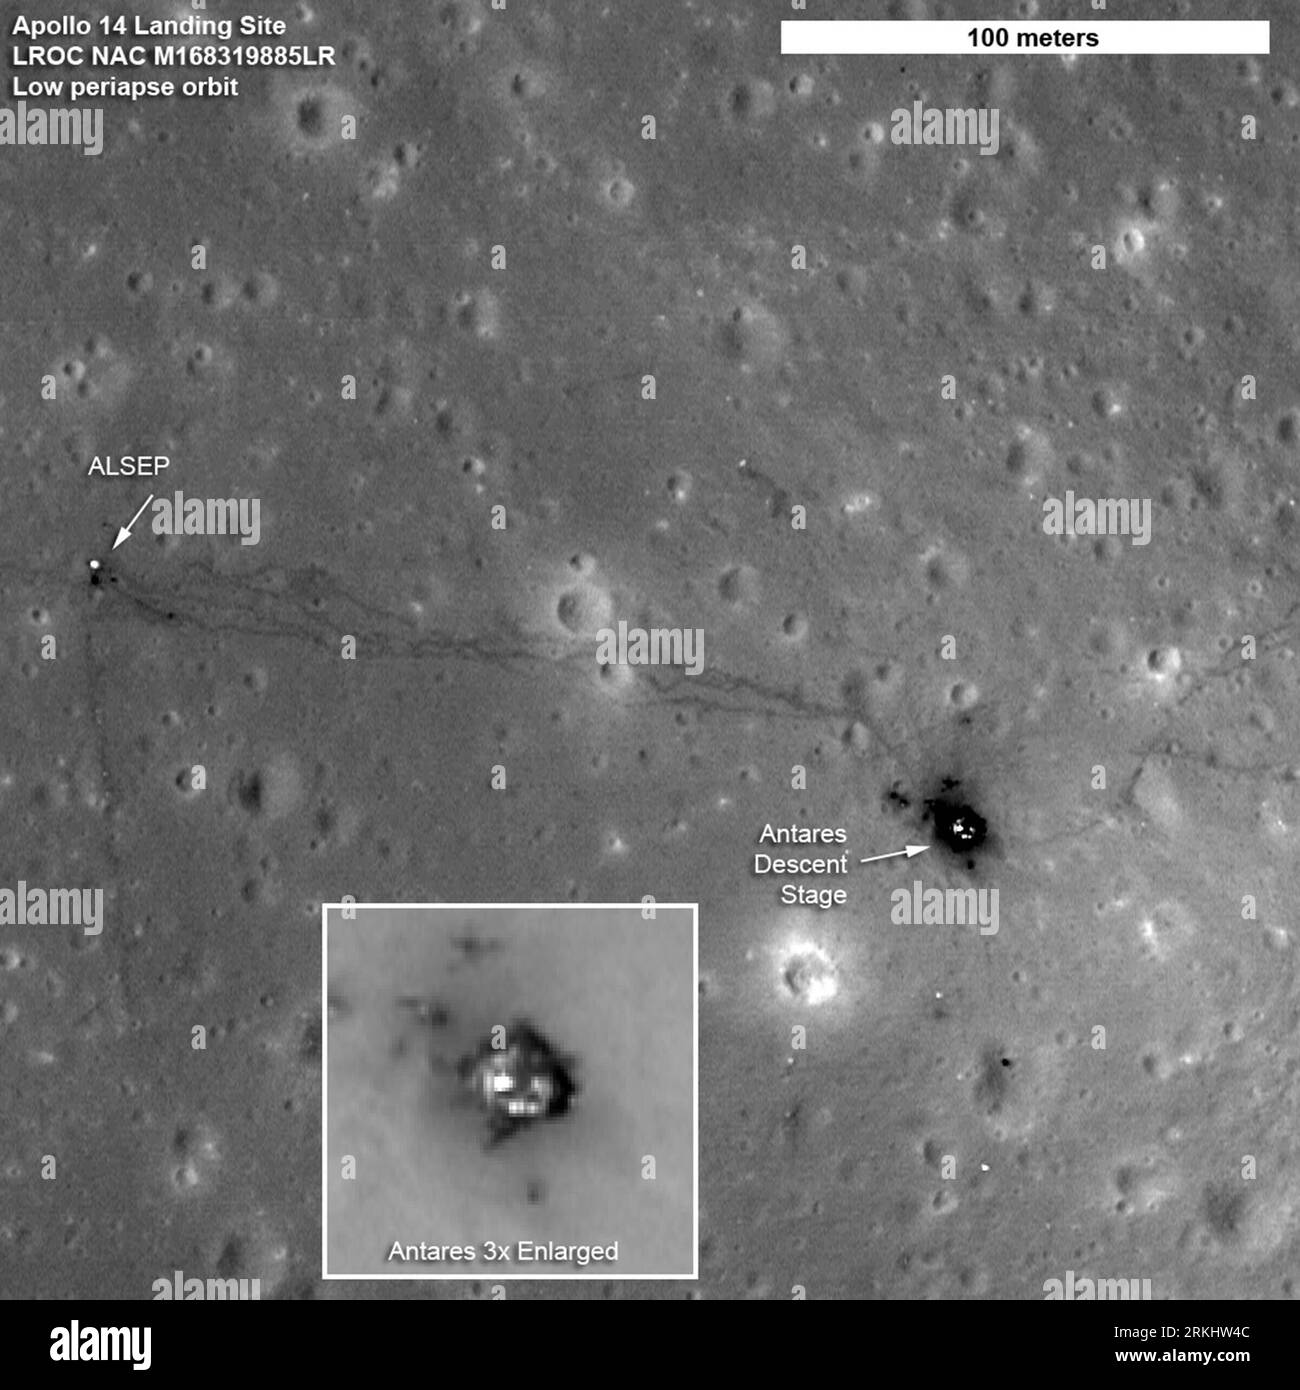 Bildnummer : 55903045 Datum : 06.09.2011 Copyright : imago/Xinhua (110907) -- WASHINGTON, 7 septembre 2011 (Xinhua) -- une photo publiée par la NASA le 6 septembre 2011 montre le site d'atterrissage d'Apollo 14. Le Lunar reconnaissance Orbiter (LRO) de la NASA a capturé les images les plus nettes jamais prises depuis l'espace des sites d'atterrissage Apollo 12, 14 et 17, a annoncé mardi l'agence spatiale américaine. (Xinhua/NASA) (lr) U.S.-NASA-APOLLO SITES D'ATTERRISSAGE-VUES PLUS NETTES PUBLICATIONxNOTxINxCHN Gesellschaft Wissenschaft Raumfahrt Mond Landung Mondlandung Landestelle sw xns x0x 2011 quadrat 55903045 Date 06 09 2011 Copyright Imago XINH Banque D'Images